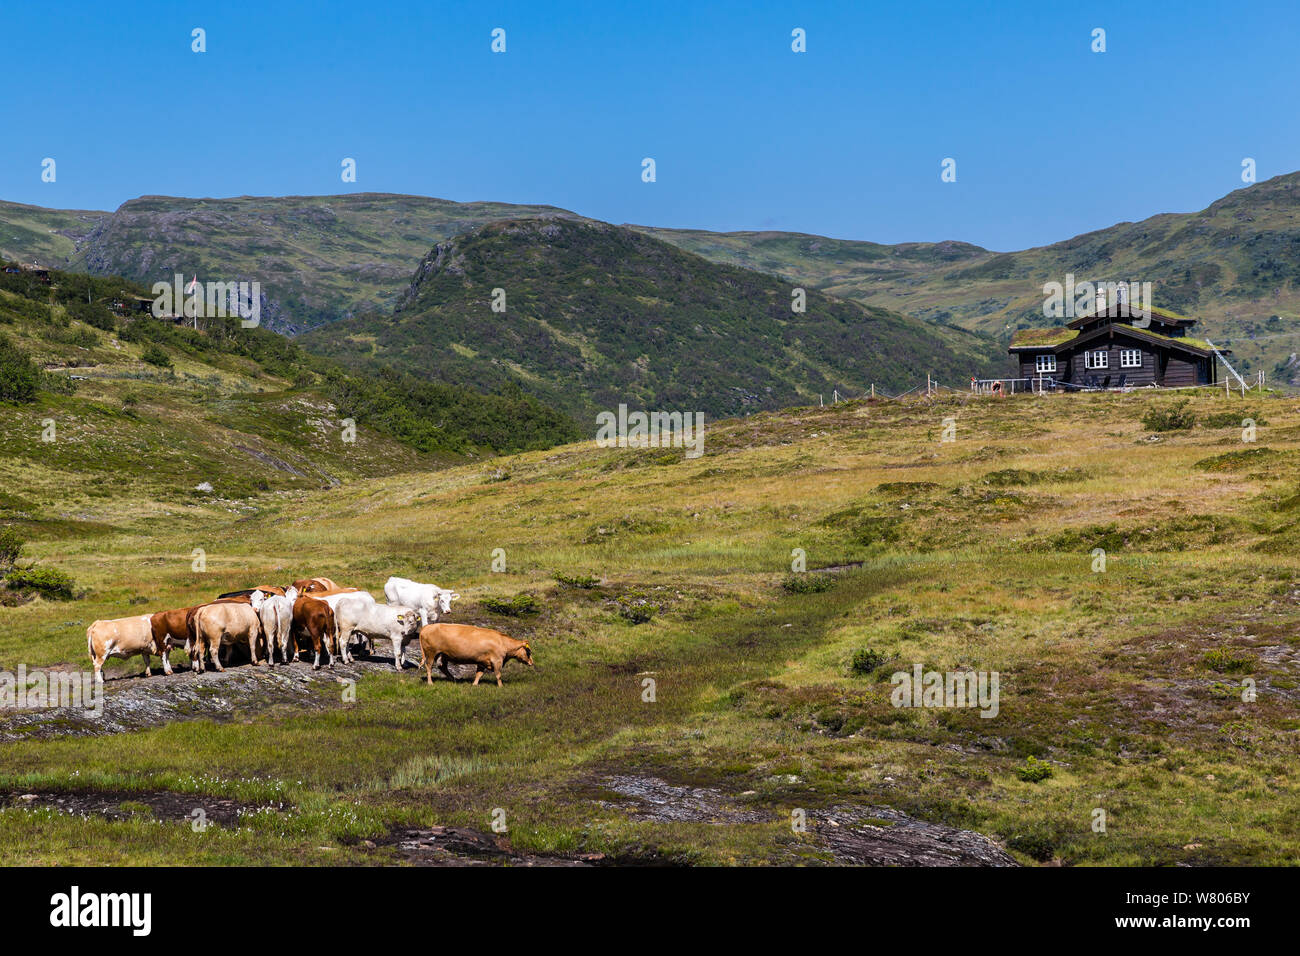 Vue Panoromic avec des vaches et une maison de la route panoramique nationale norvégienne entre Gaularfjellet Myrkdalen et Vik en Norvège Scandinavie (n13) Banque D'Images